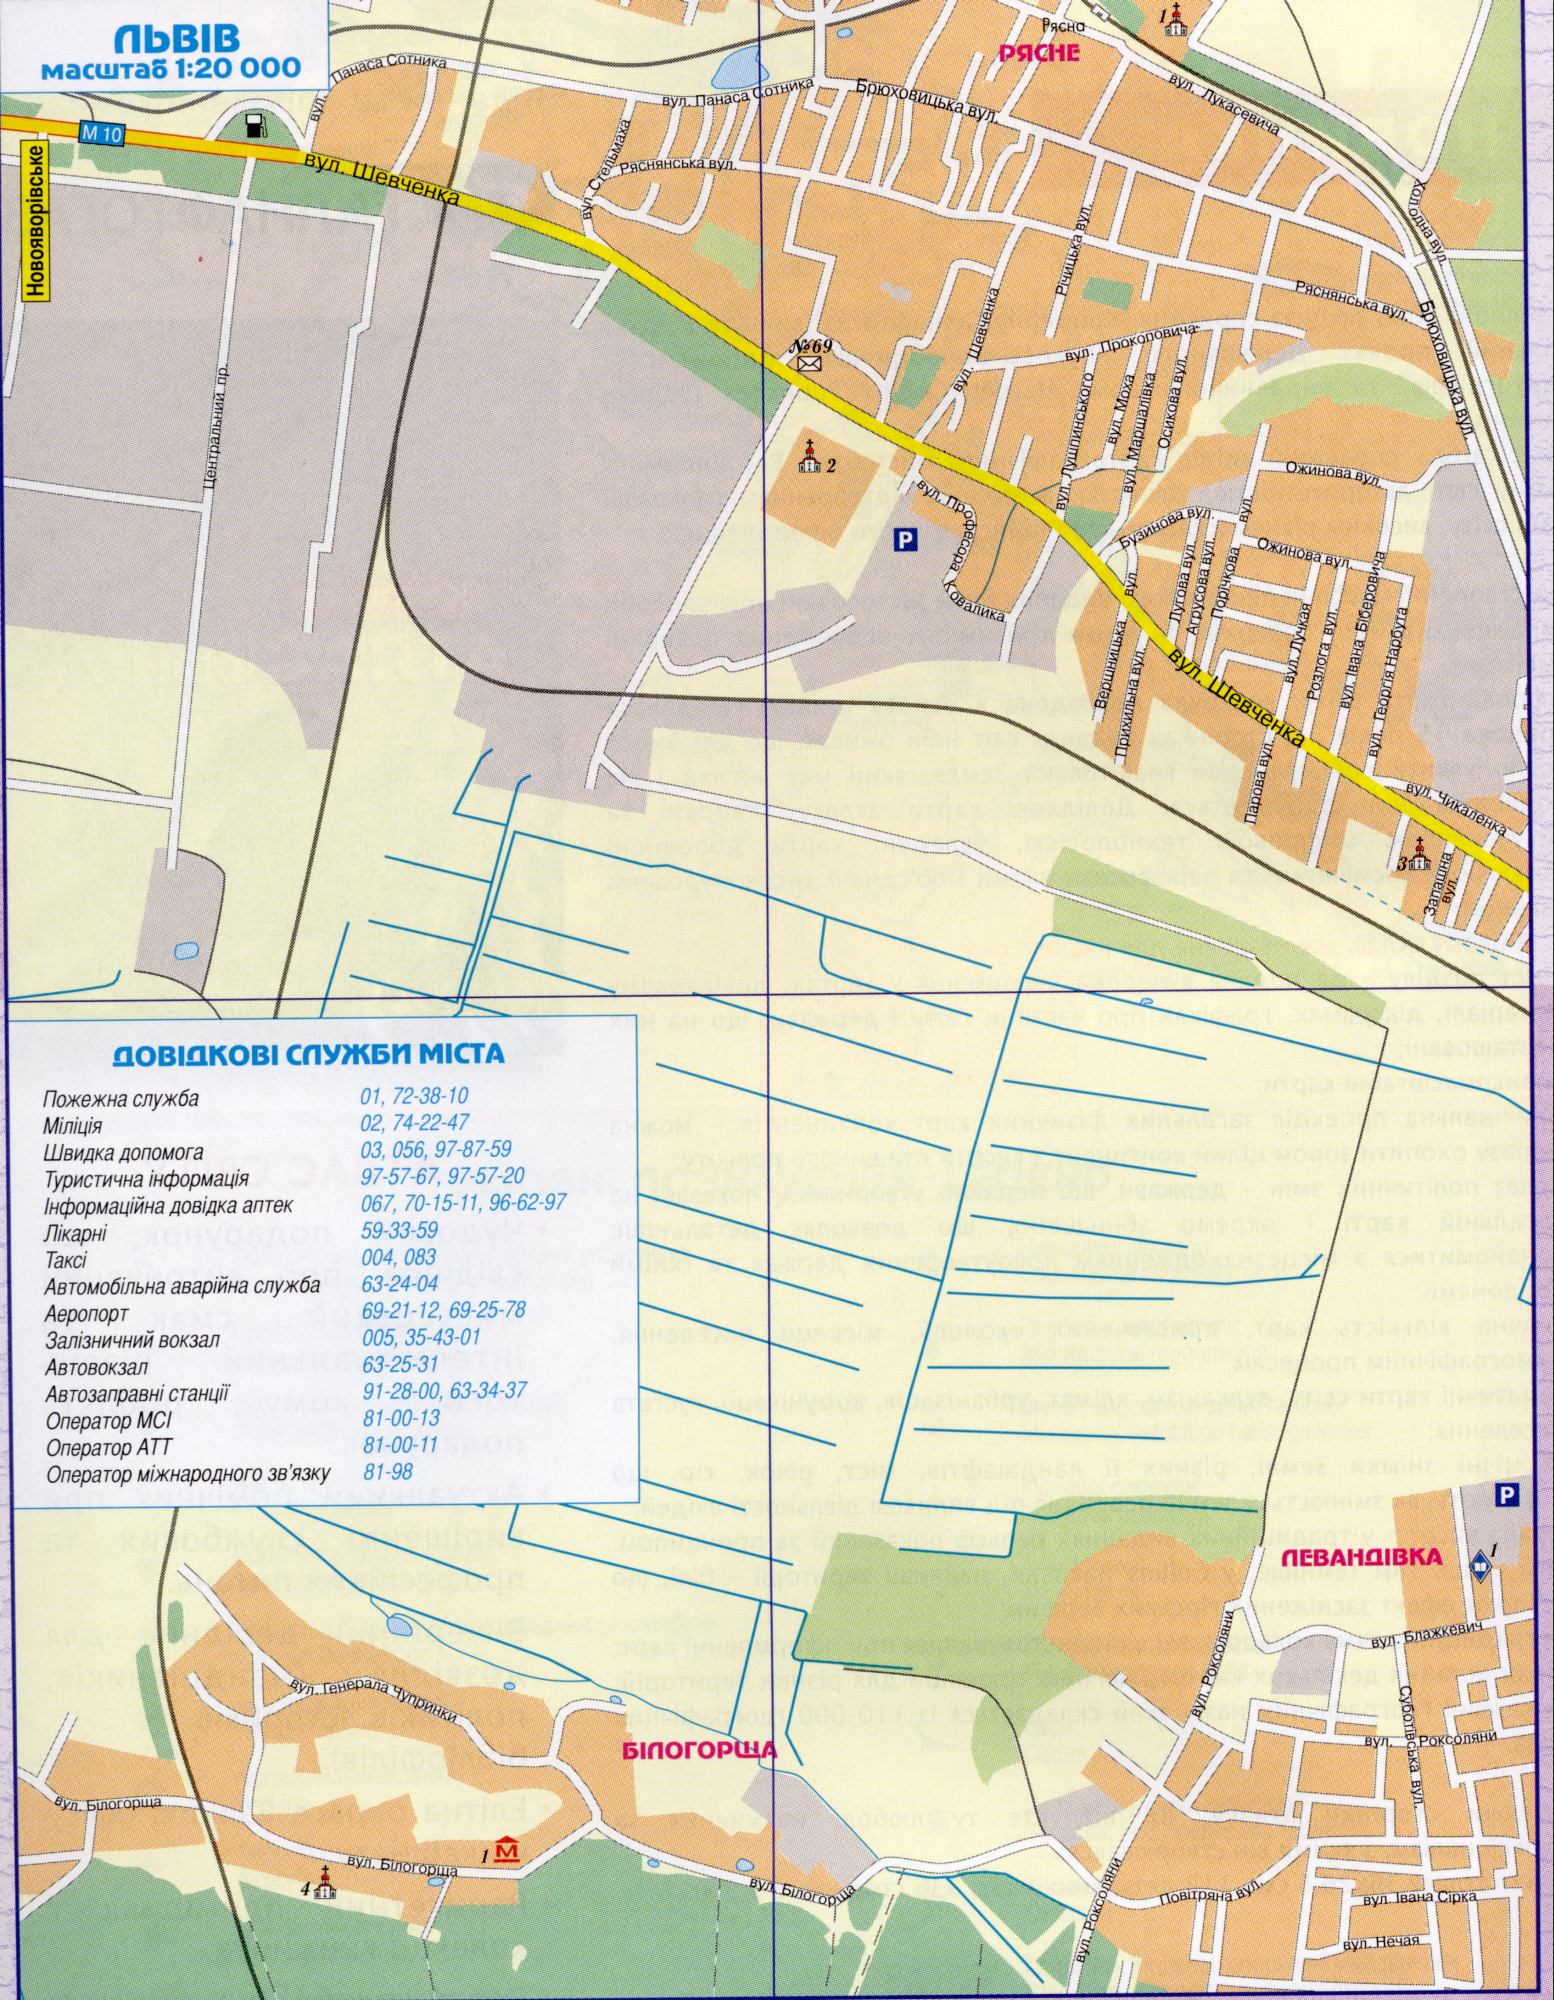 Lviv carte détails, zoomer 1 cm de 200 mètres. Le centre régional de la région de Lviv. télécharger